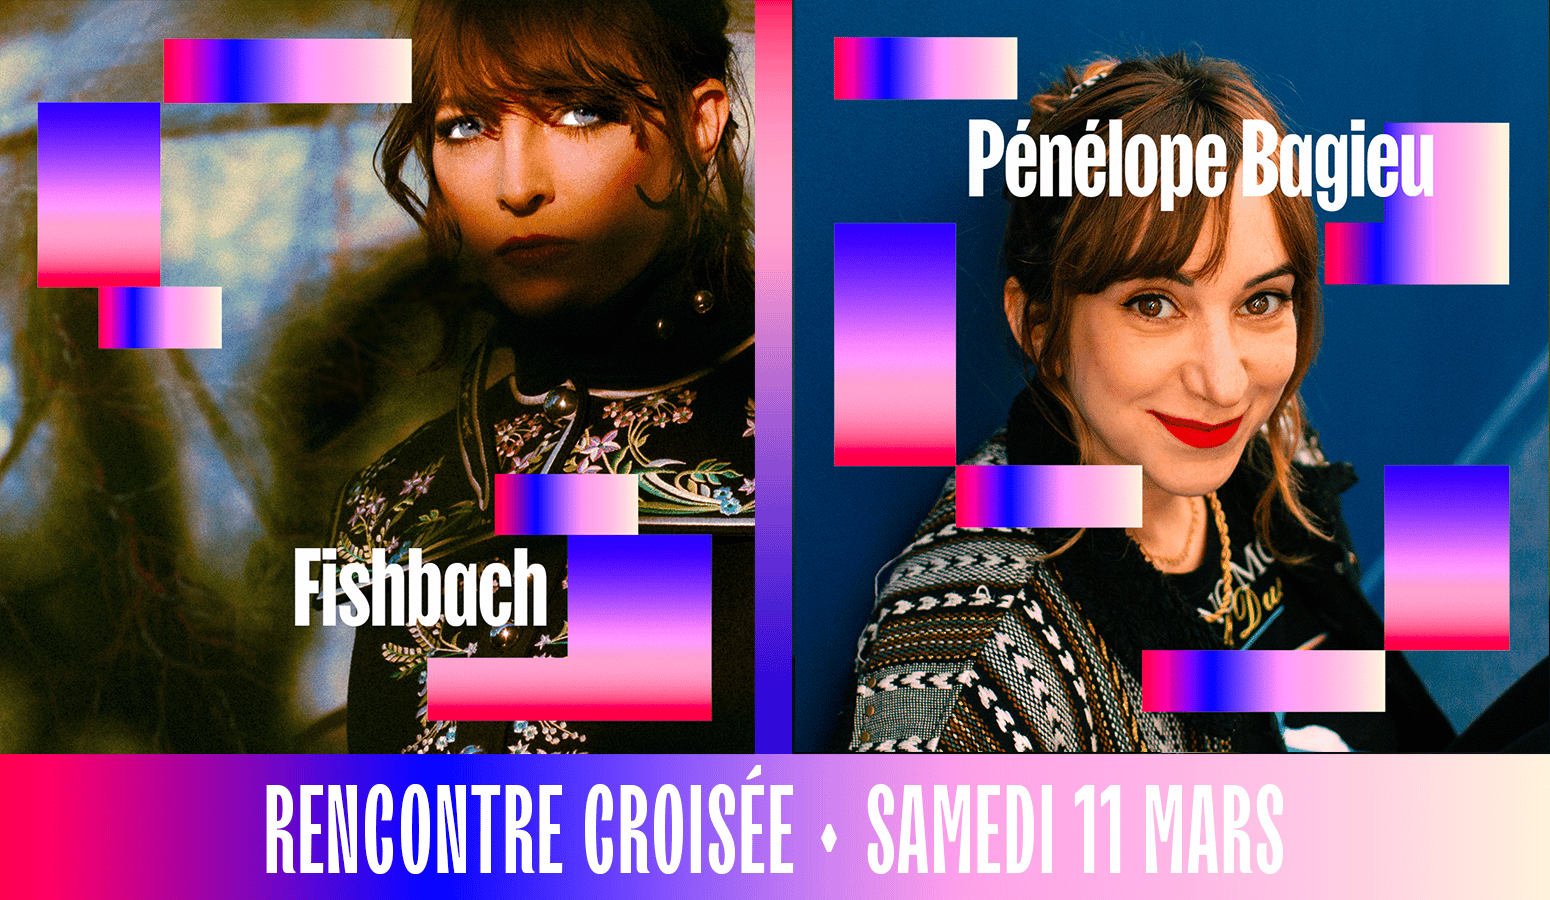 Template de la rencontre croisée du samedi 11 mars au Pop Women Festival de Fishbach et Pénélope Bagieu